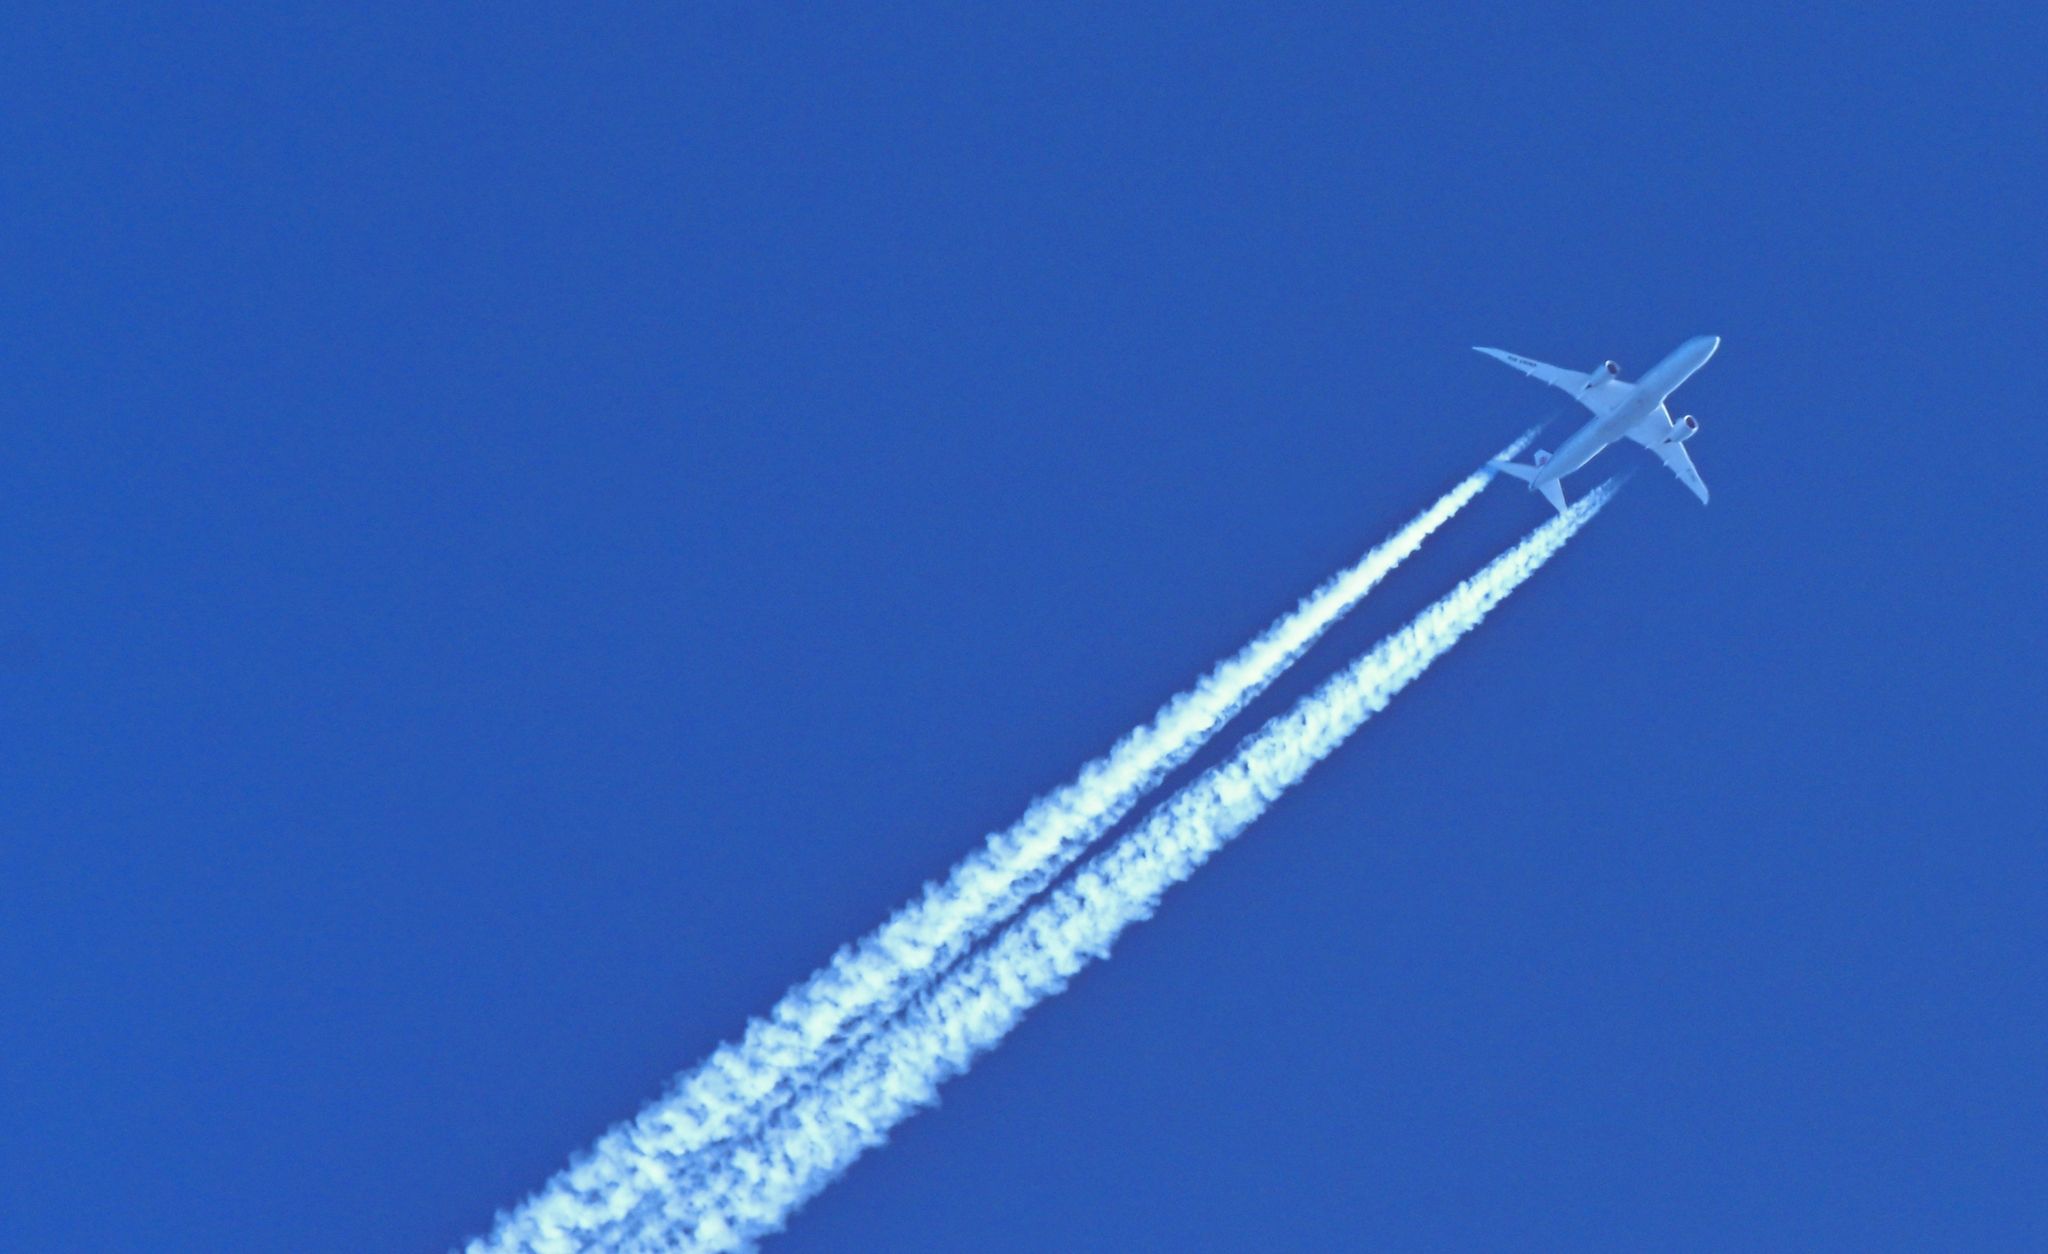 Schönes Motiv aber schlecht für Umwelt und Klima: Ein Flugzeug hinterlässt am blauen Himmel Kondensstreifen.